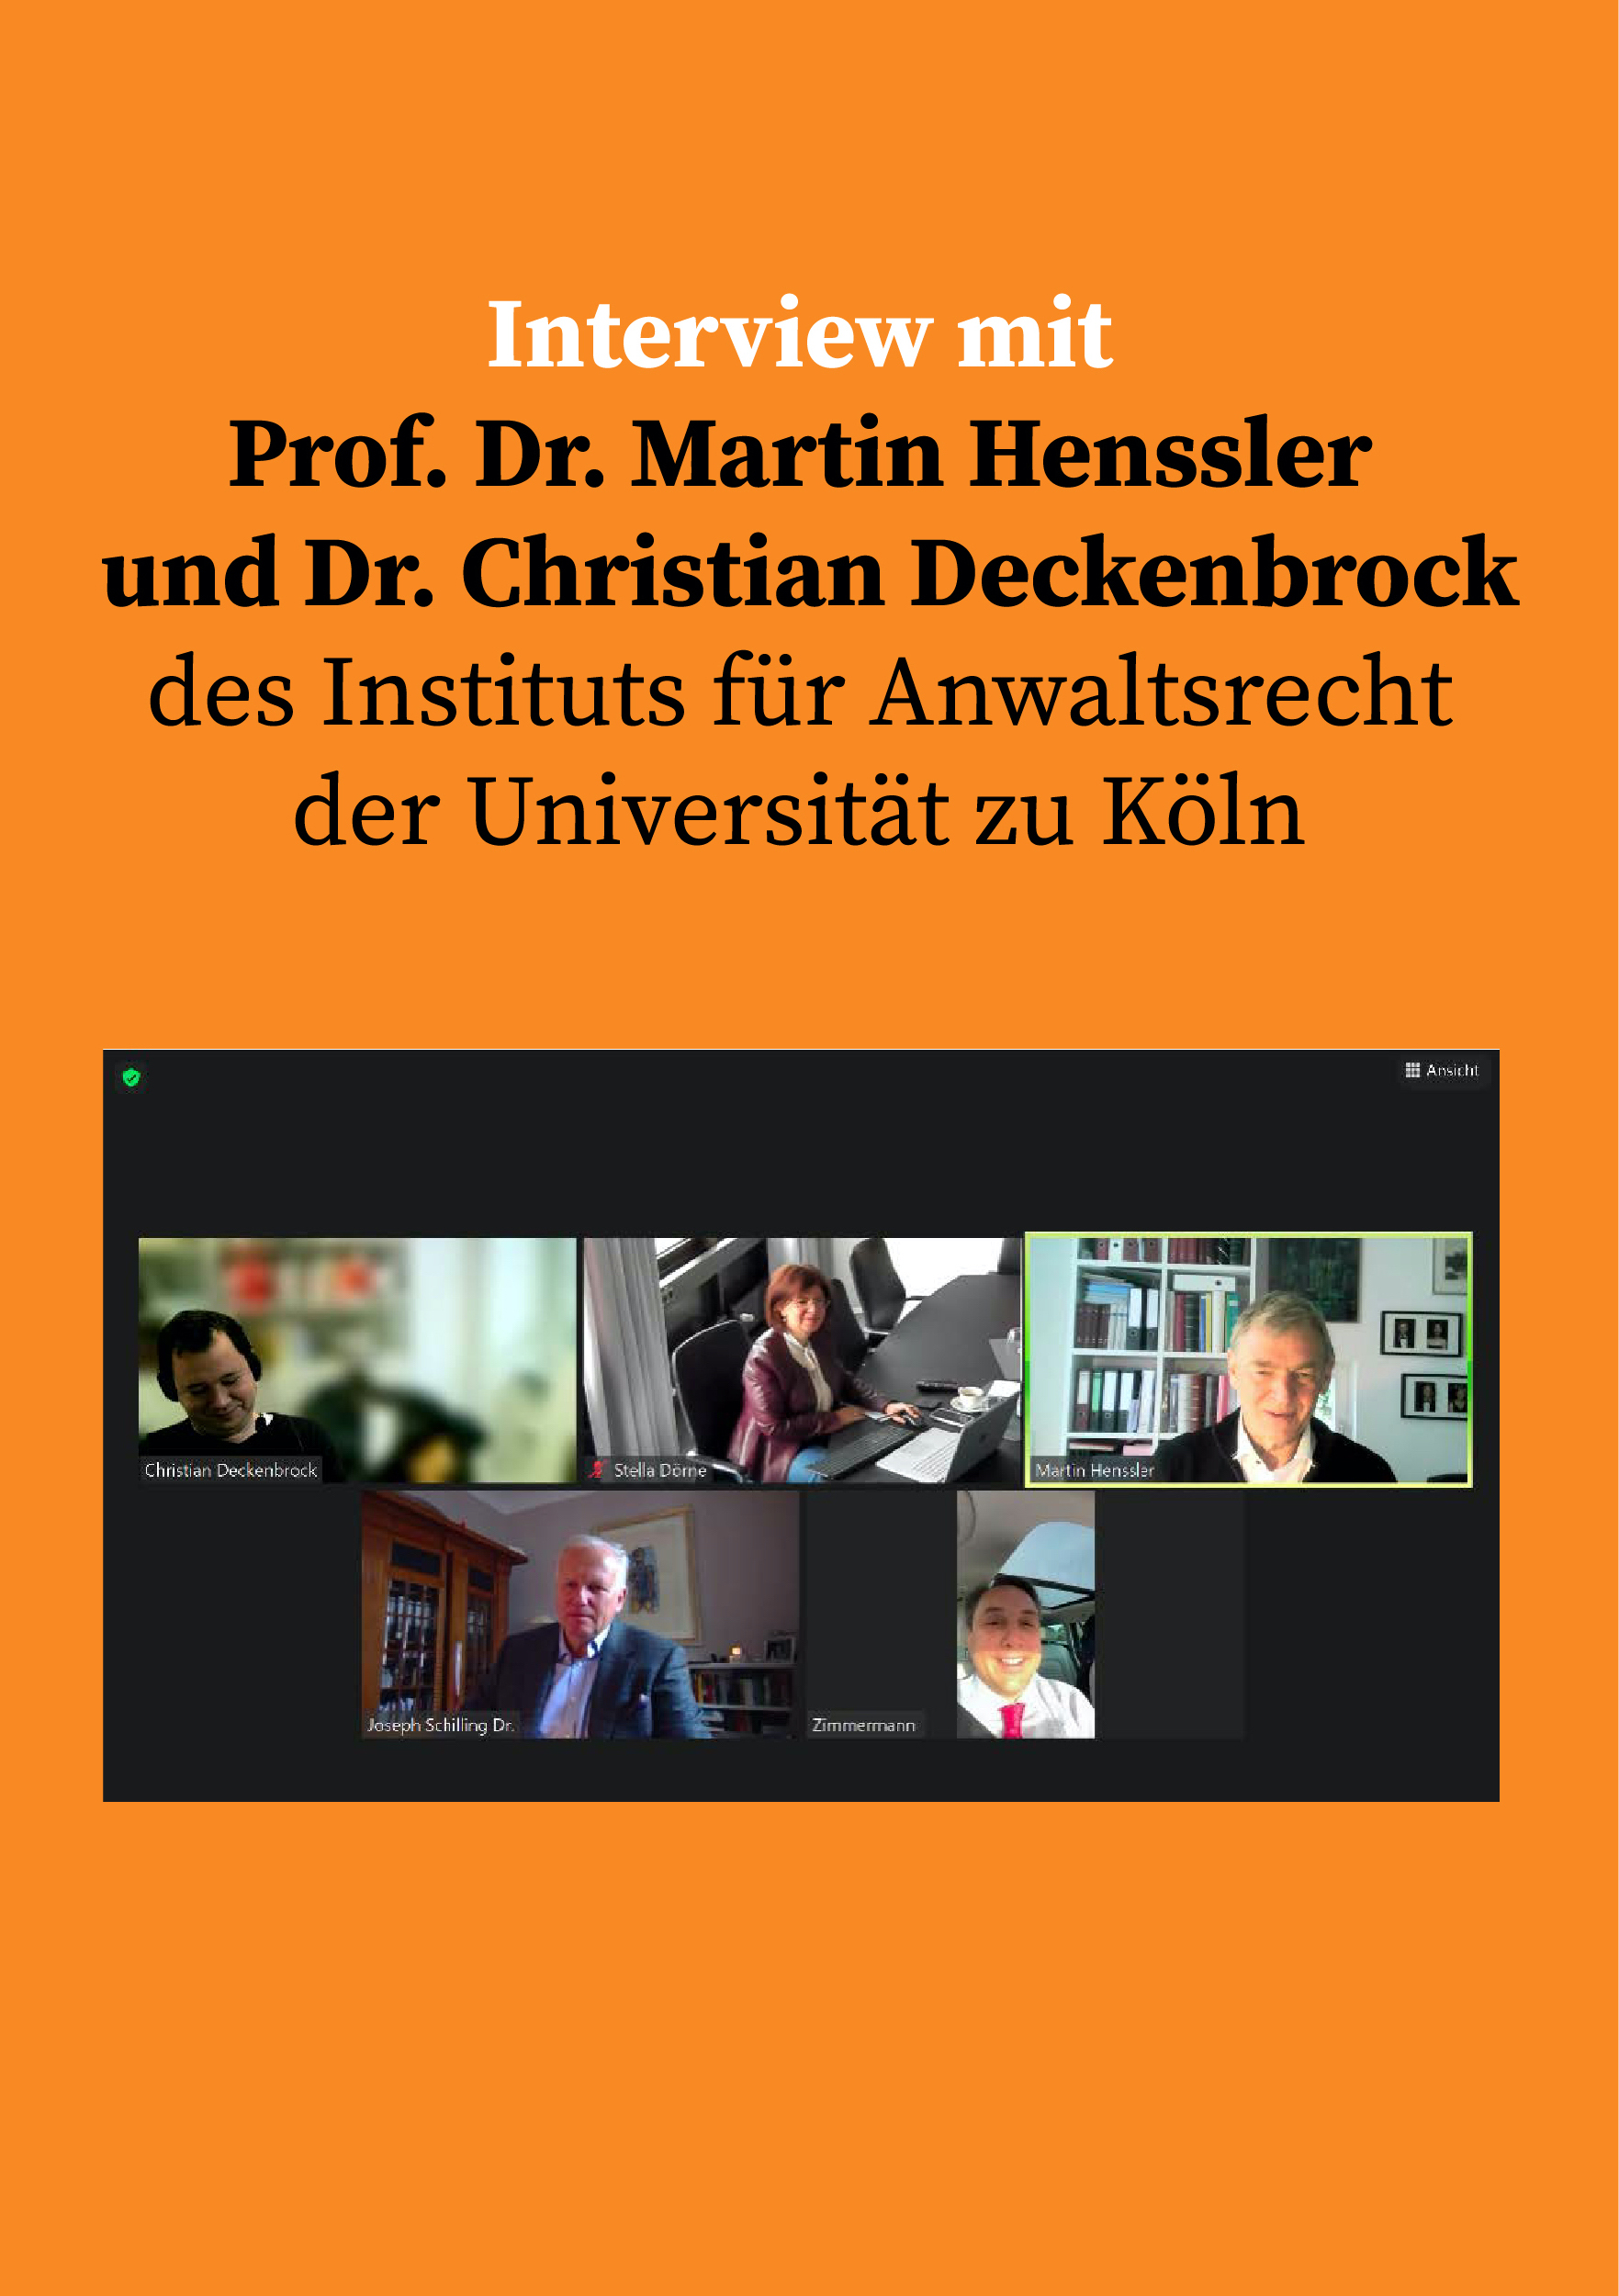 Interview mit Prof. Dr. Martin Henssler (Geschäftsführender Direktor) und Dr. Christian Deckenbrock (Akademischer Oberrat)